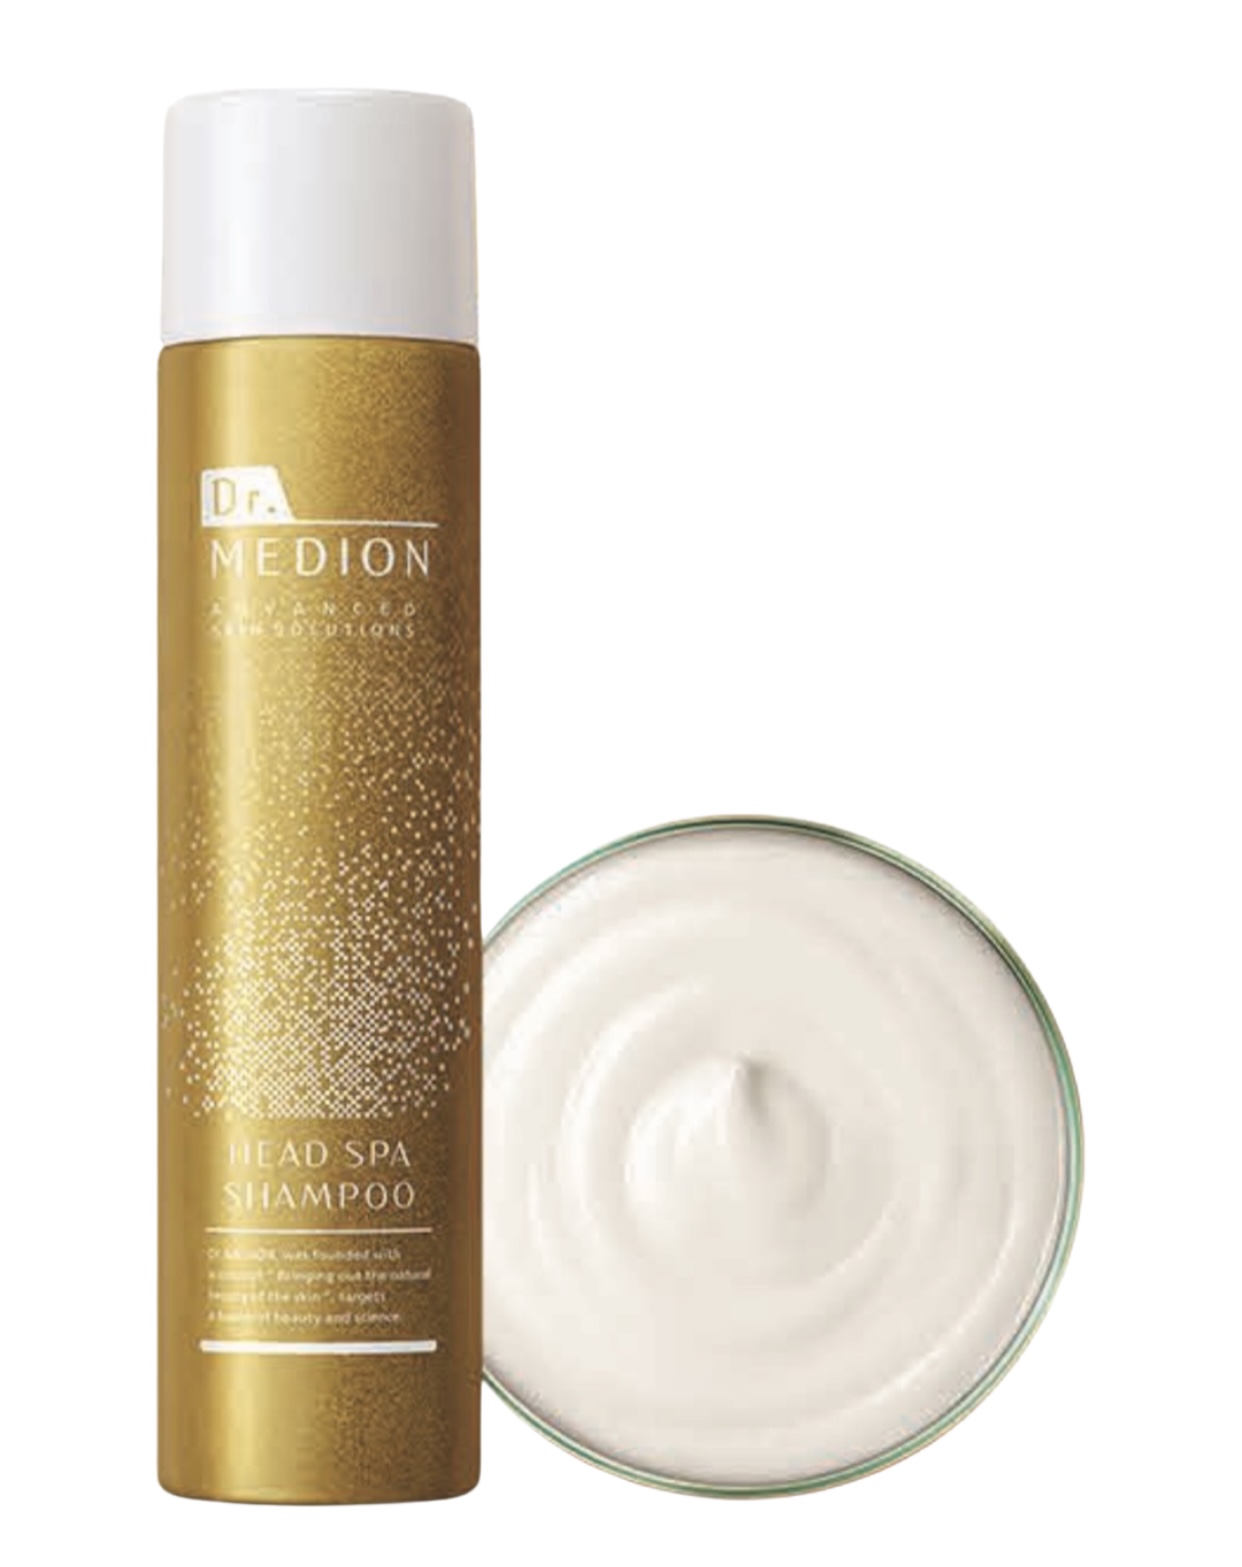 Dr.Medion Кислородный шампунь-активатор для увлажнения и роста волос Head SPA Shampoo